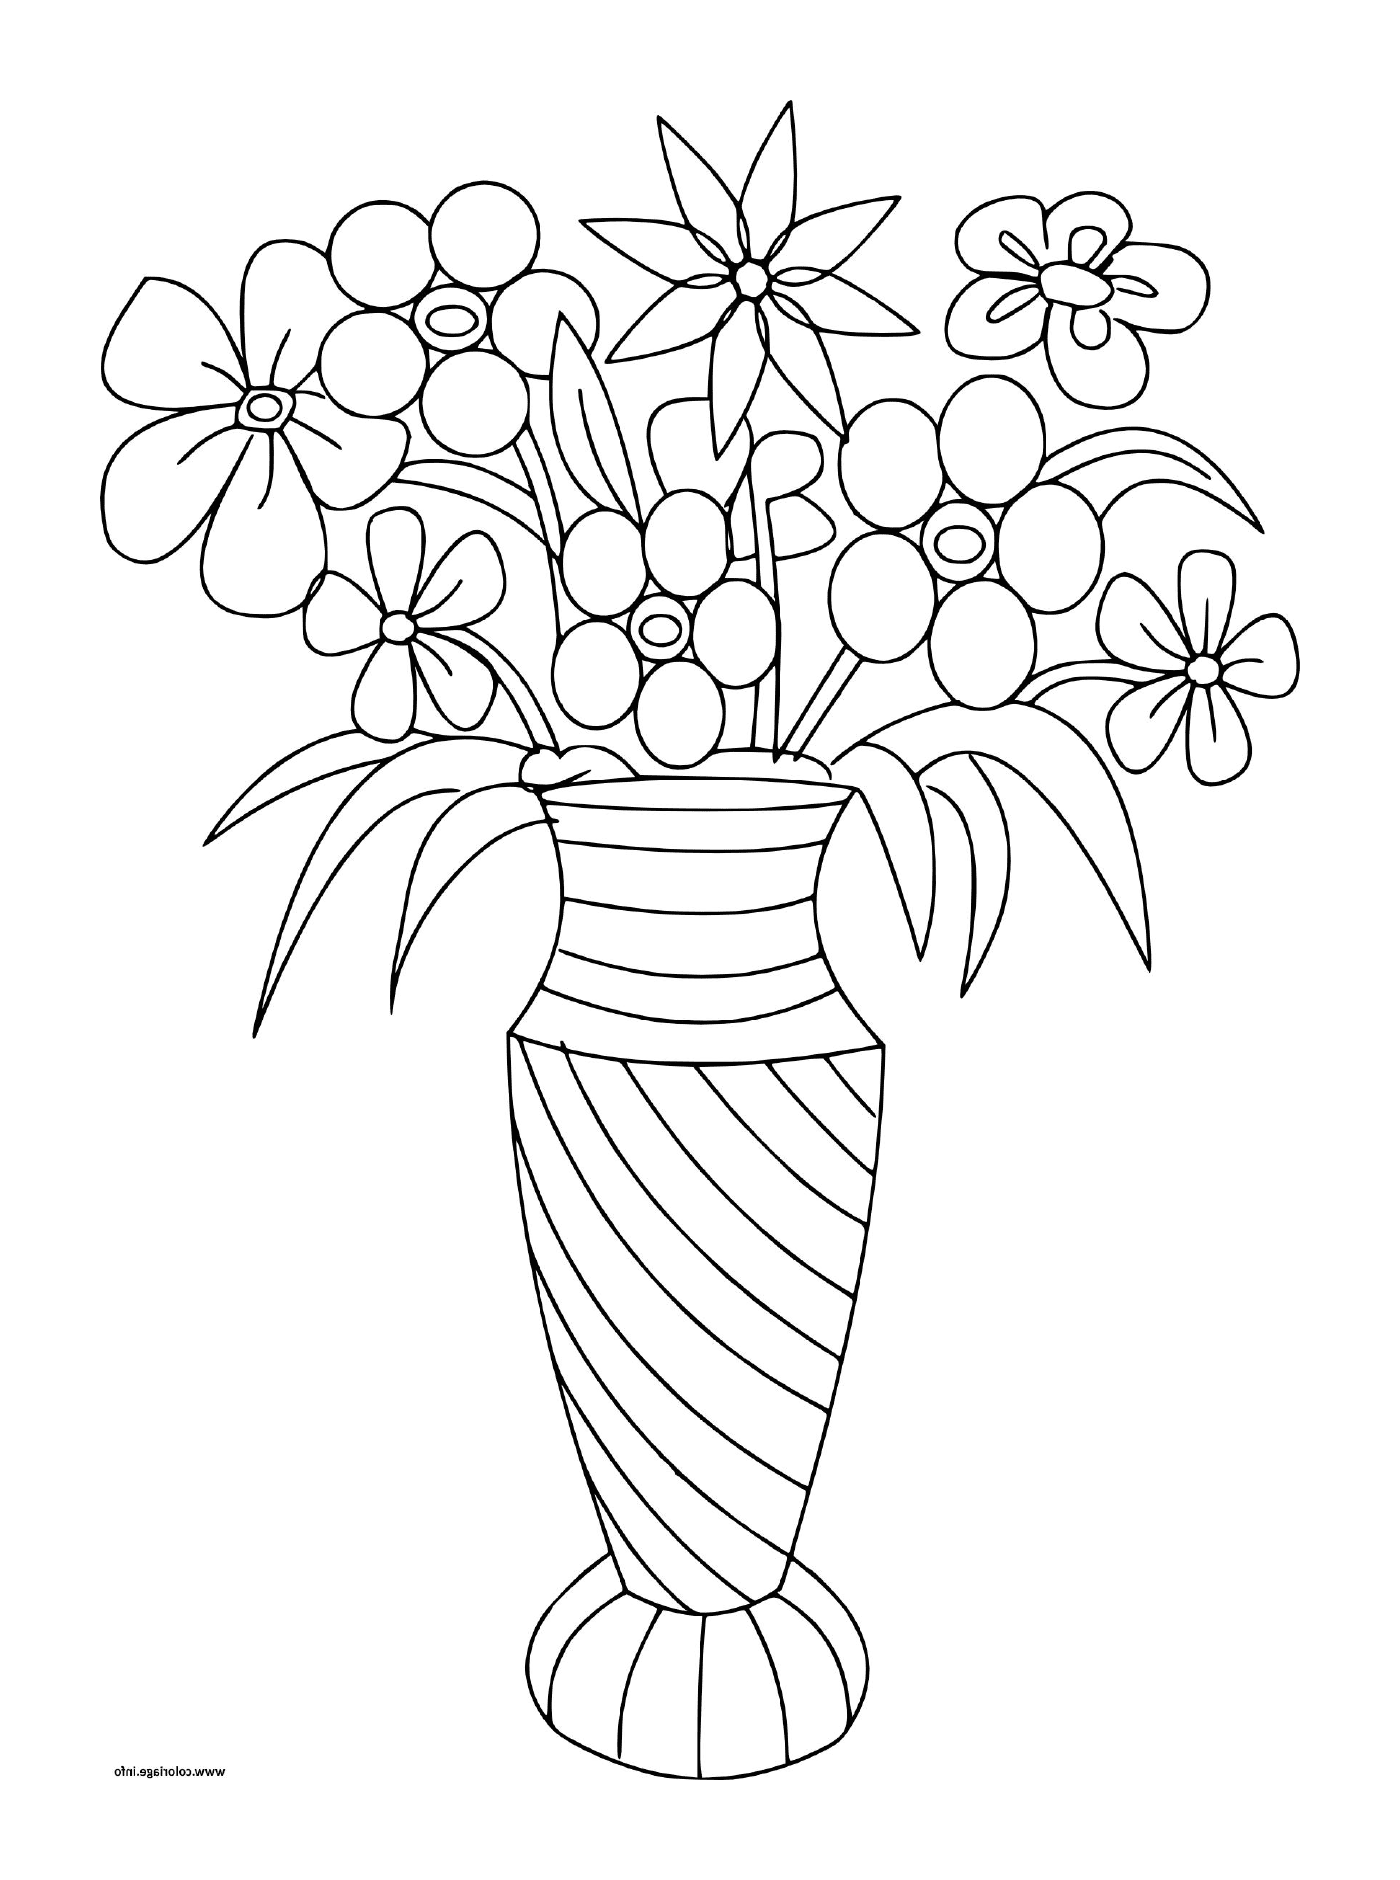  Vários buquês de flores em um vaso 